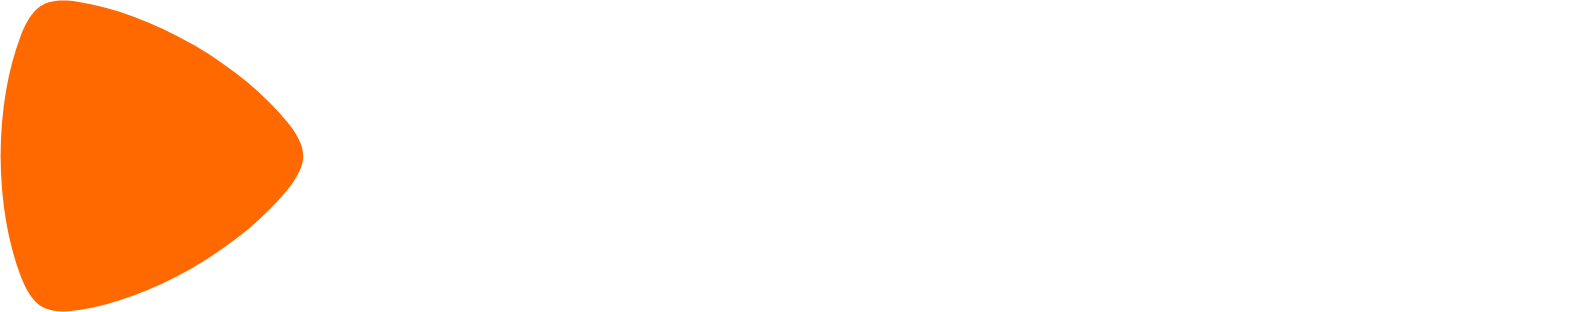 Zalando logo large for dark backgrounds (transparent PNG)